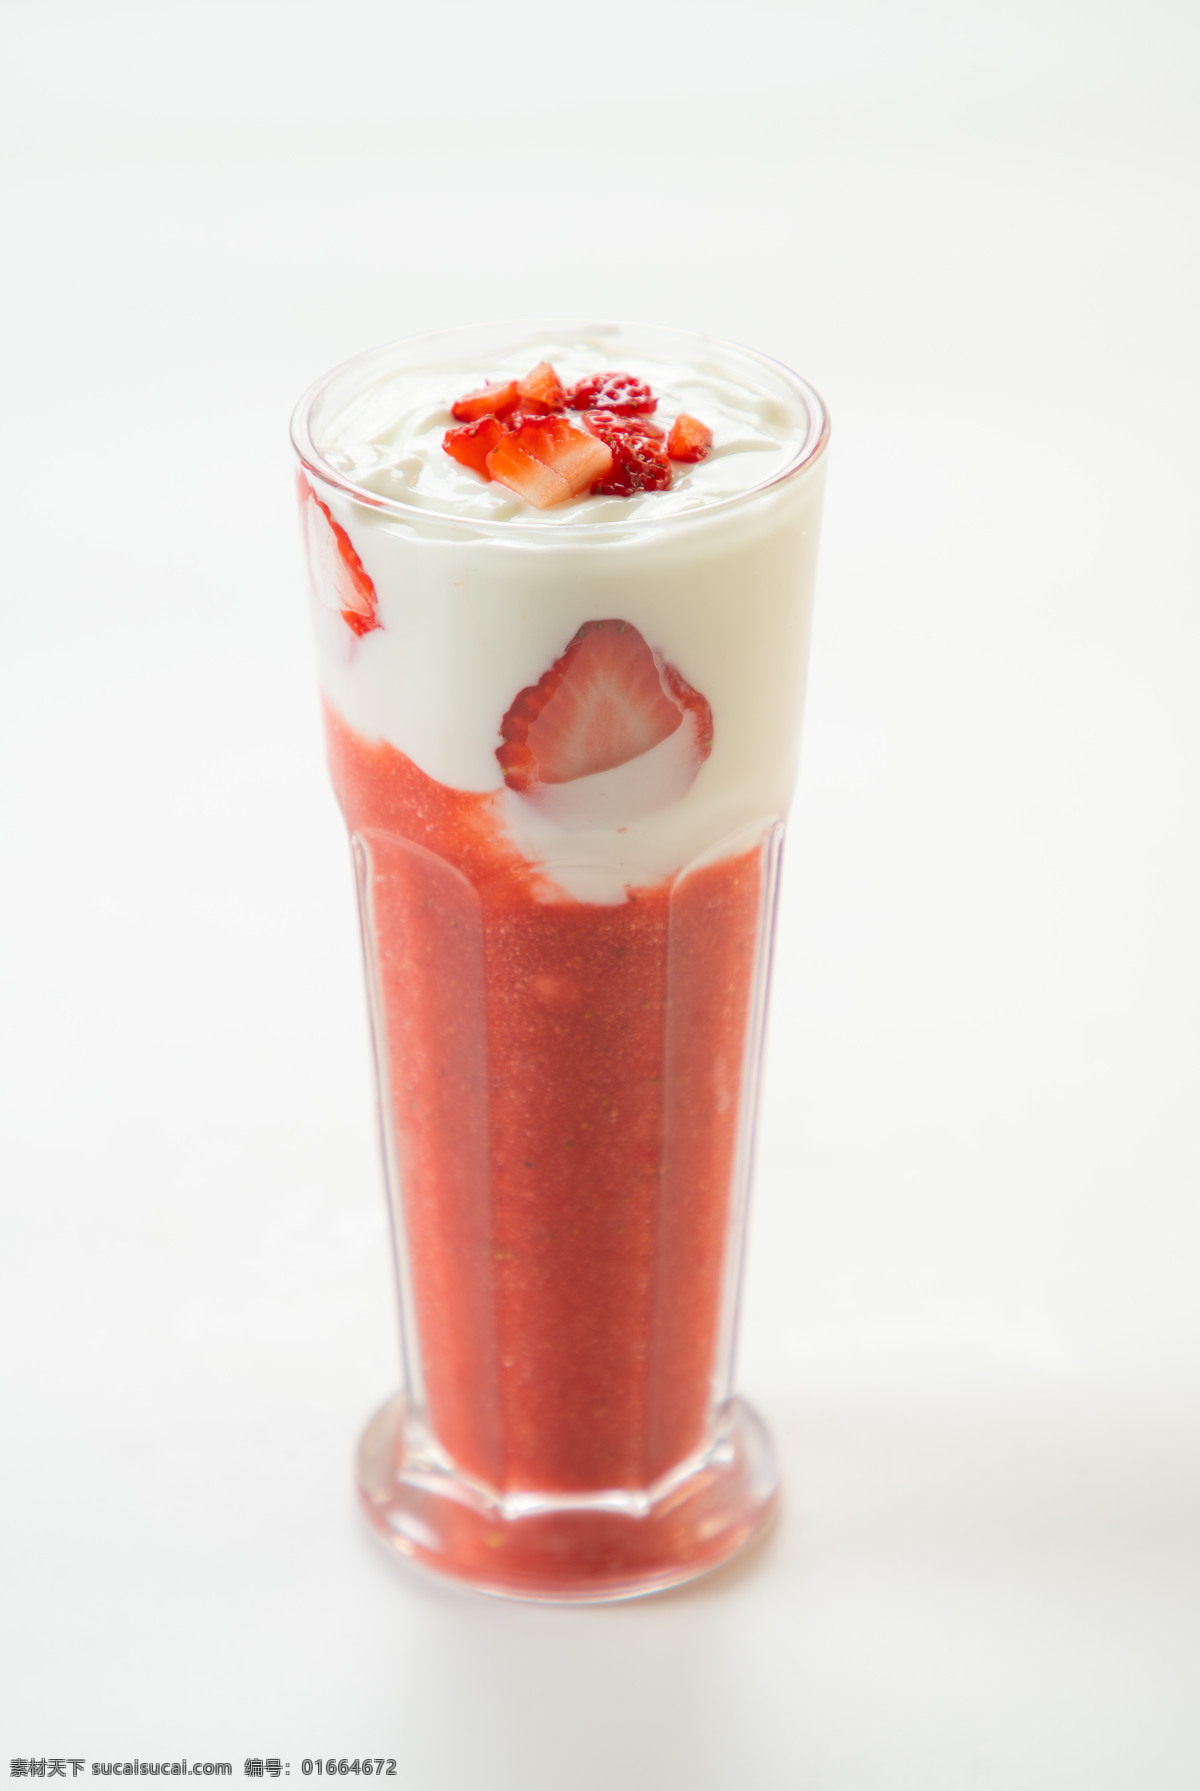 草莓奶盖 草莓汁 美食 传统美食 餐饮美食 高清菜谱用图 喜满缘 饮料酒水